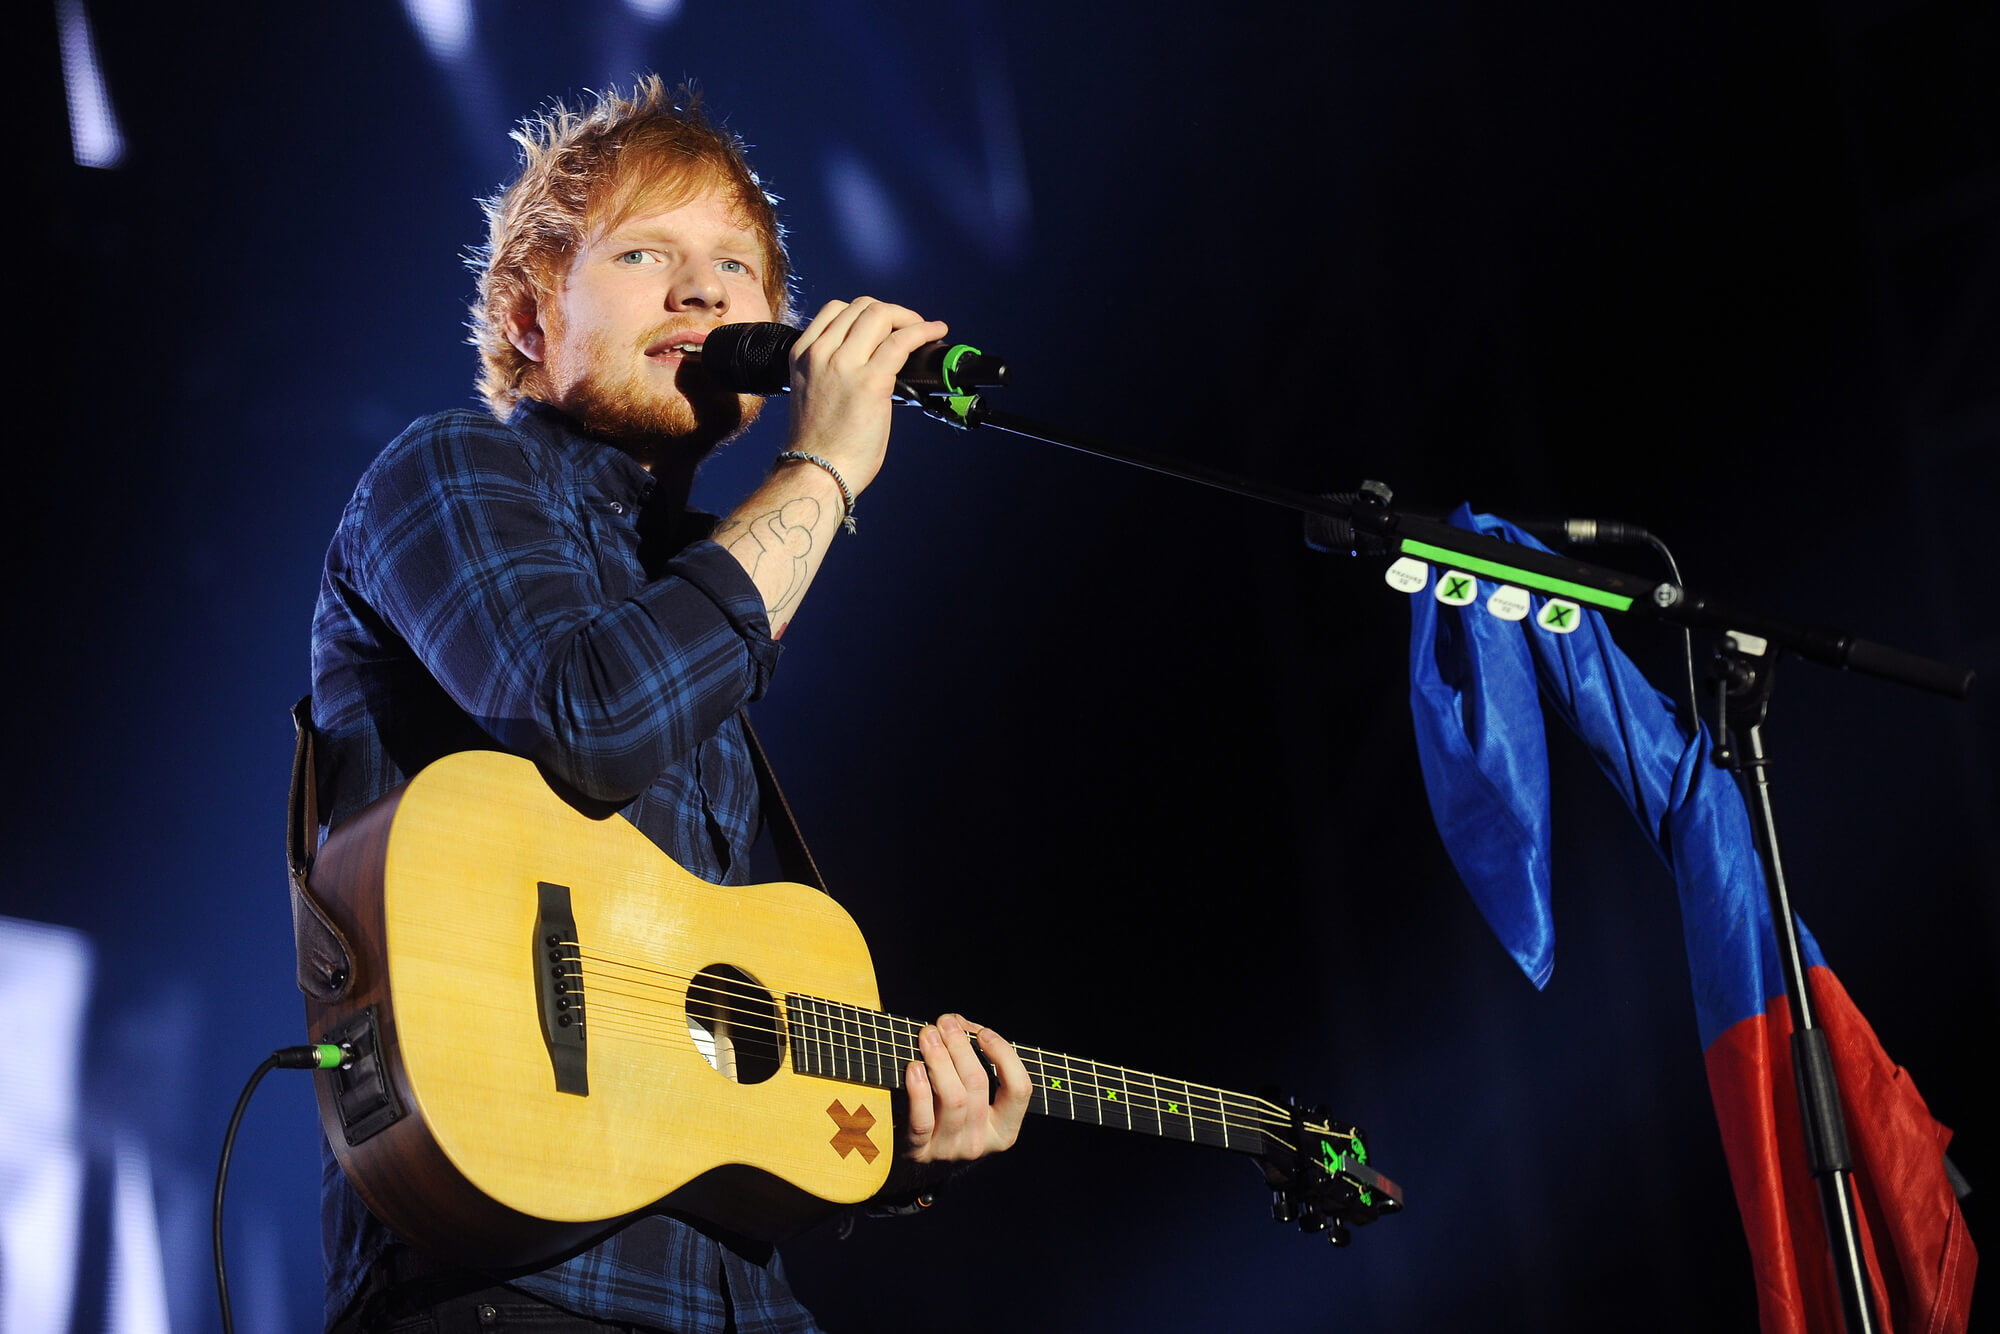 Aprender inglês com música: 7 expressões de Ed Sheeran